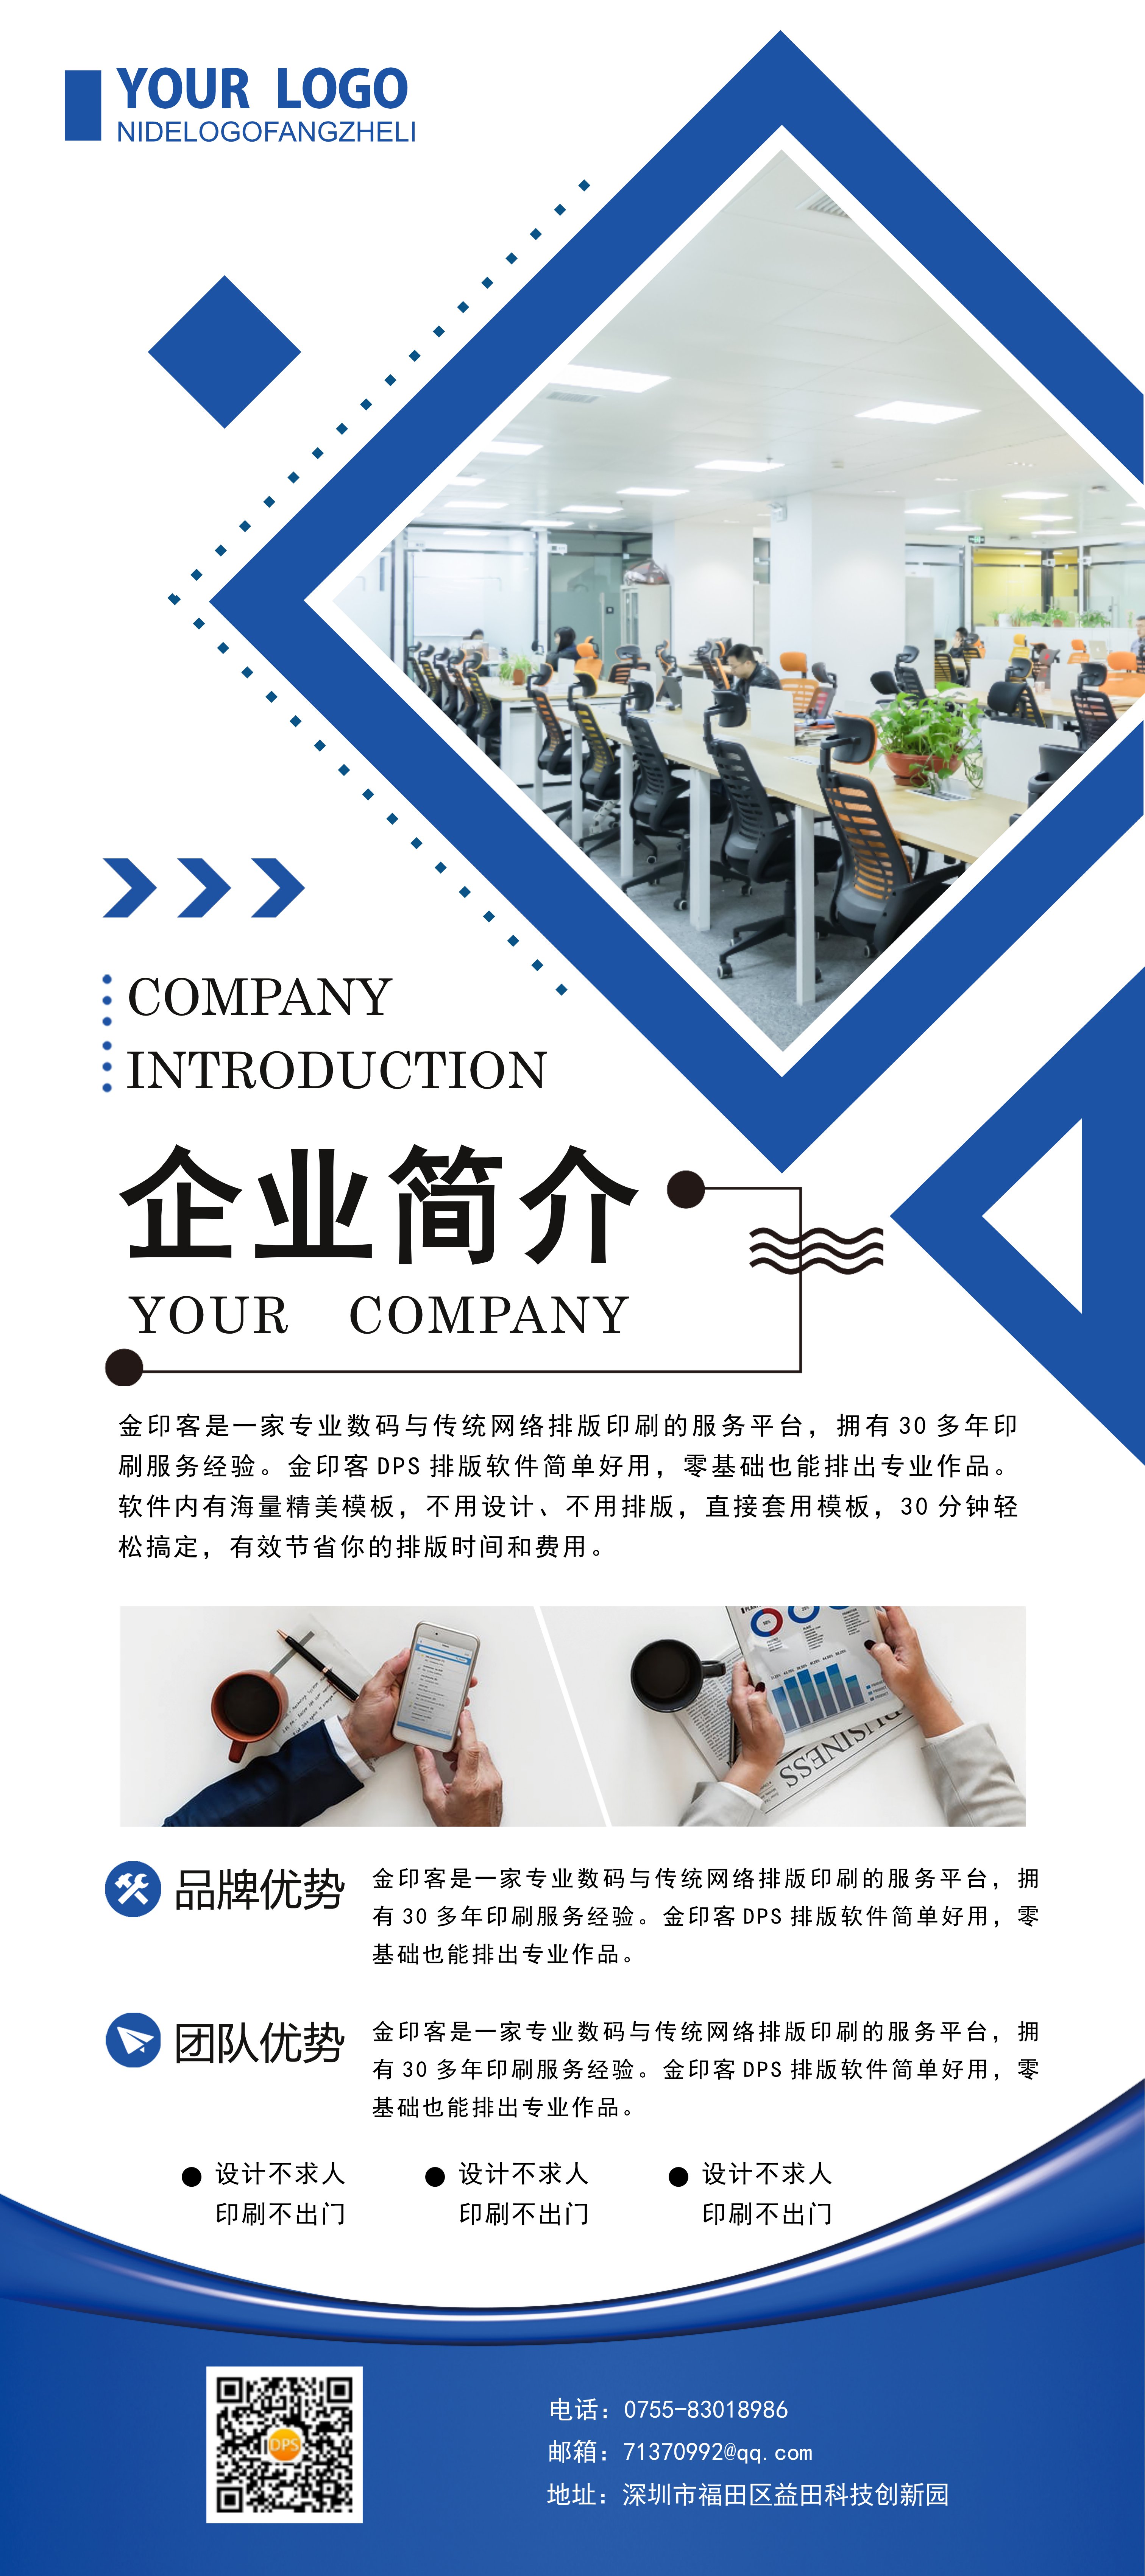 蓝色商务智能自动化设备企业宣传画册企业简介模板下载-金印客模板库